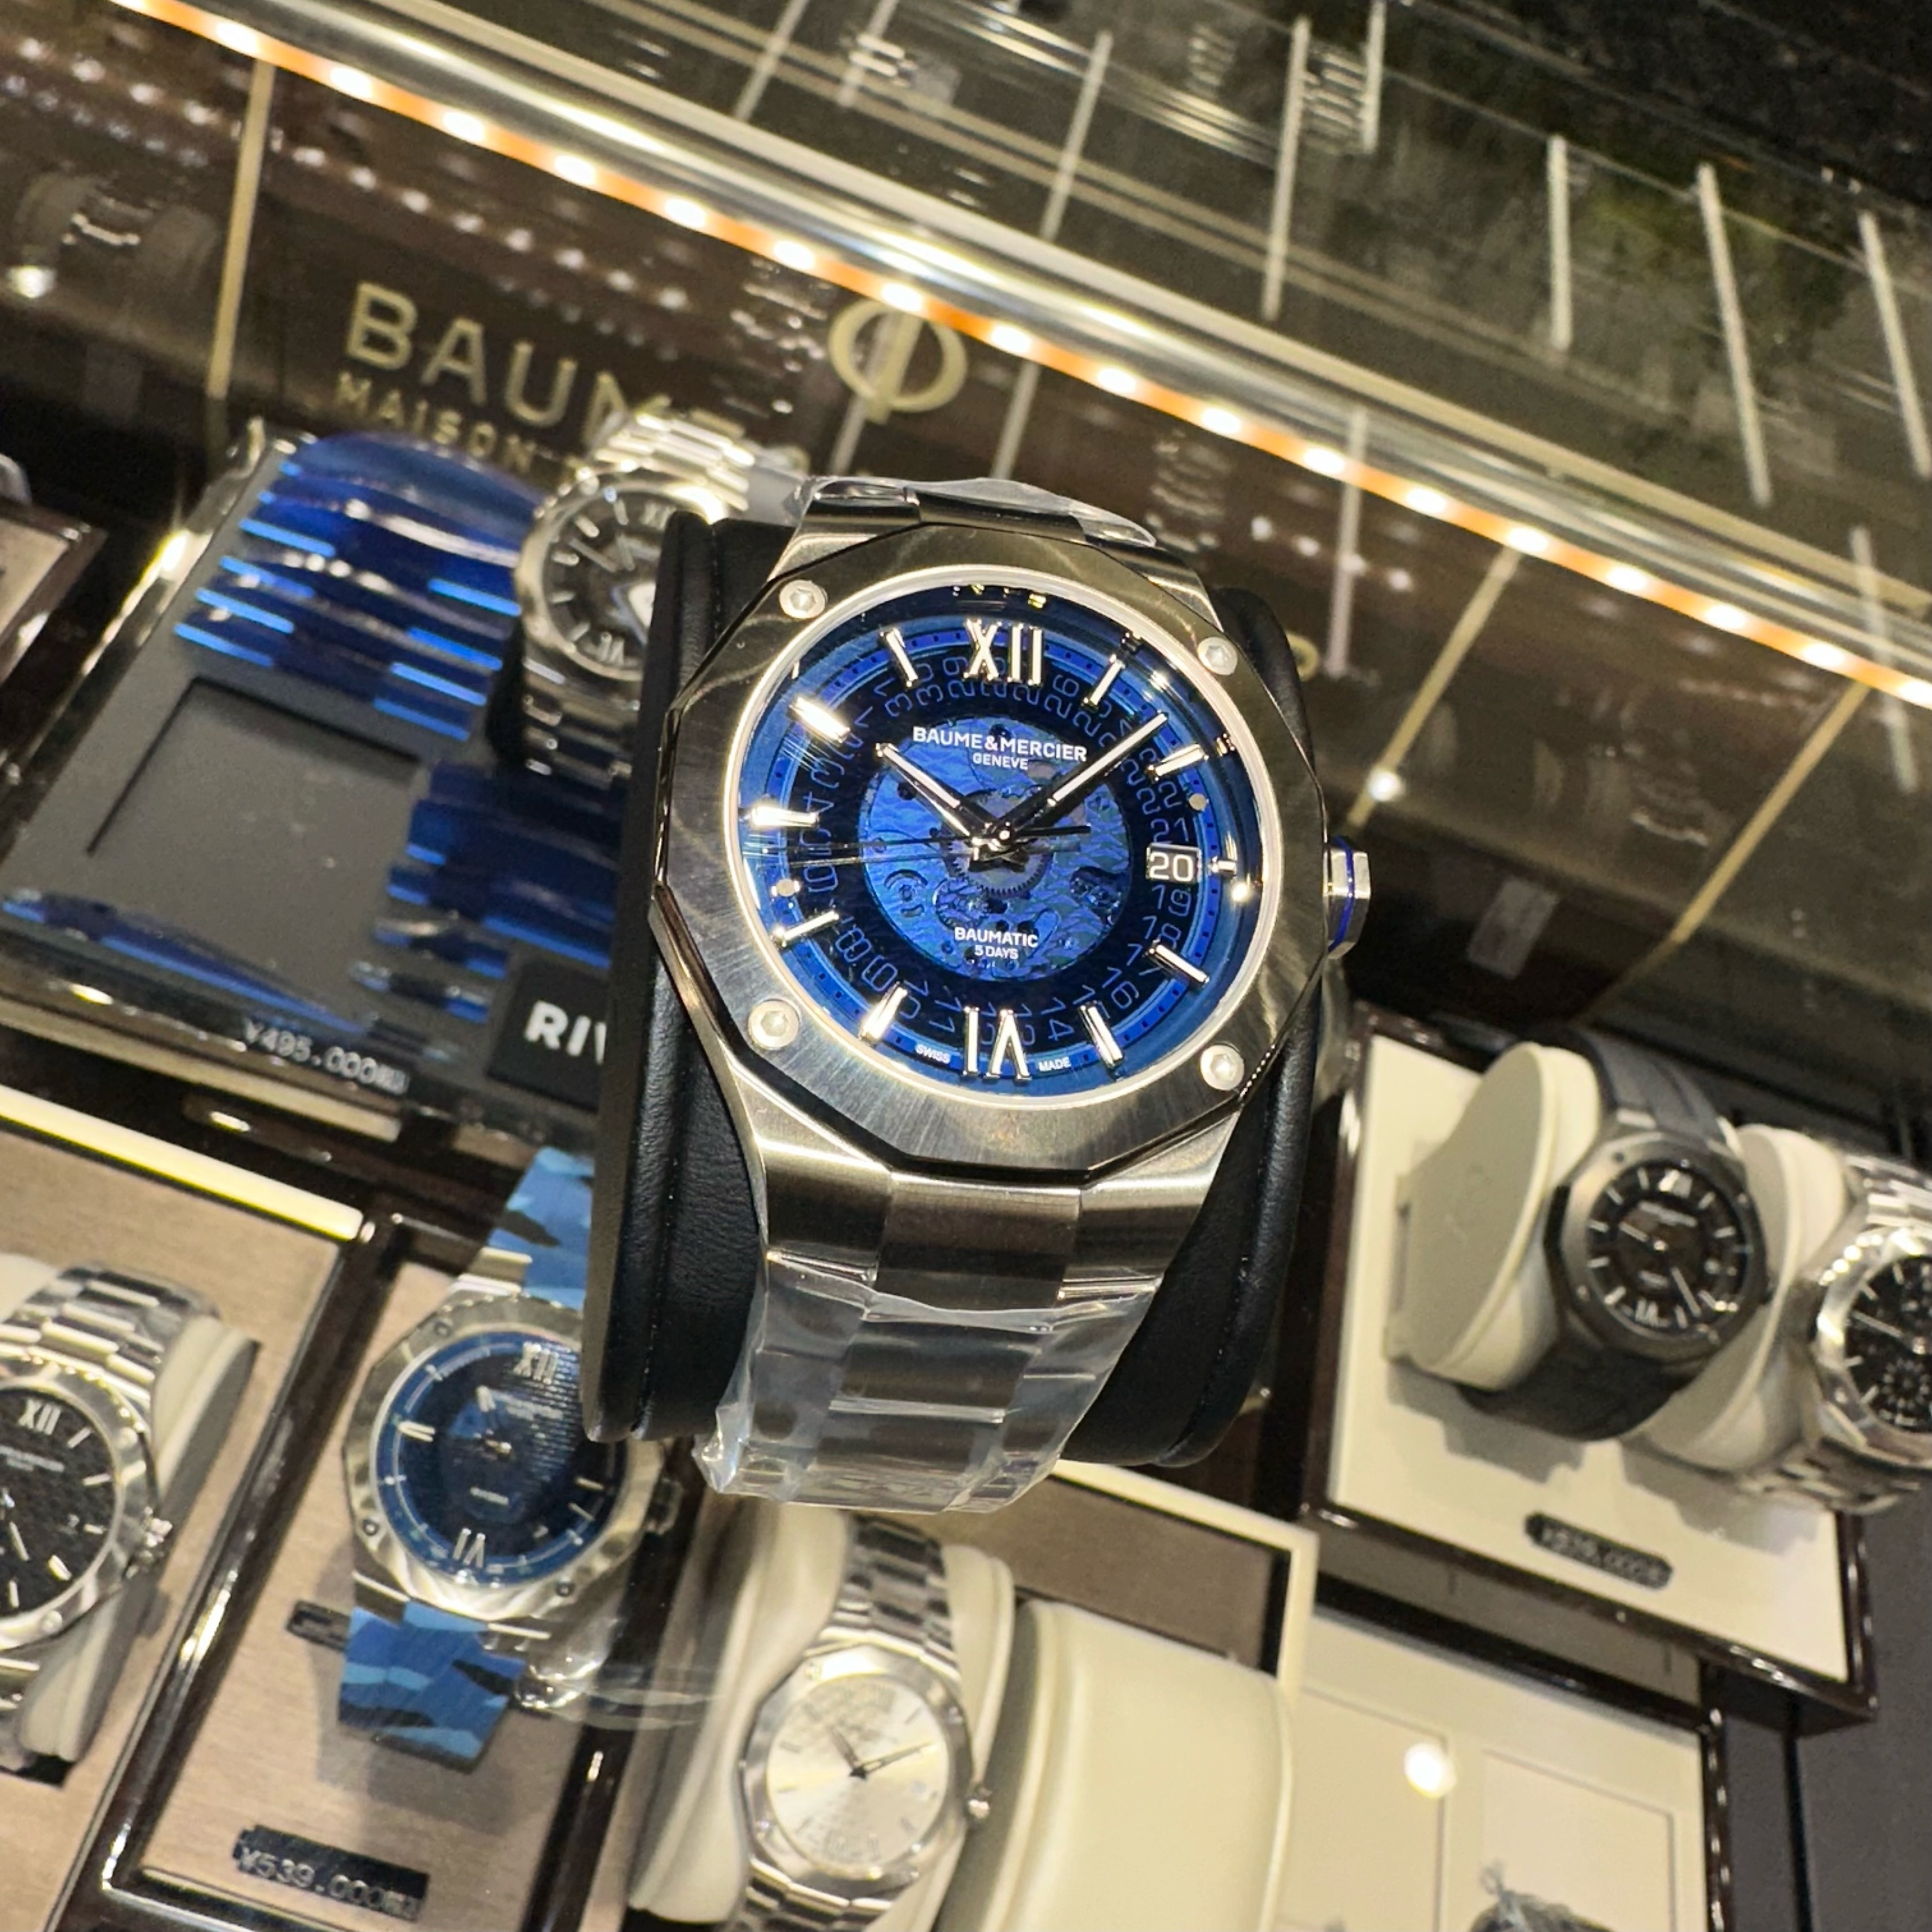 ボームアンドメルシエ　時計　 腕時計　自動巻き　お洒落　かっこいい　リビエラ　フランス　西海岸　青　ブルー　フレッシャーズ　オシャレ　ボーマティック　コスパ最強　プレゼント